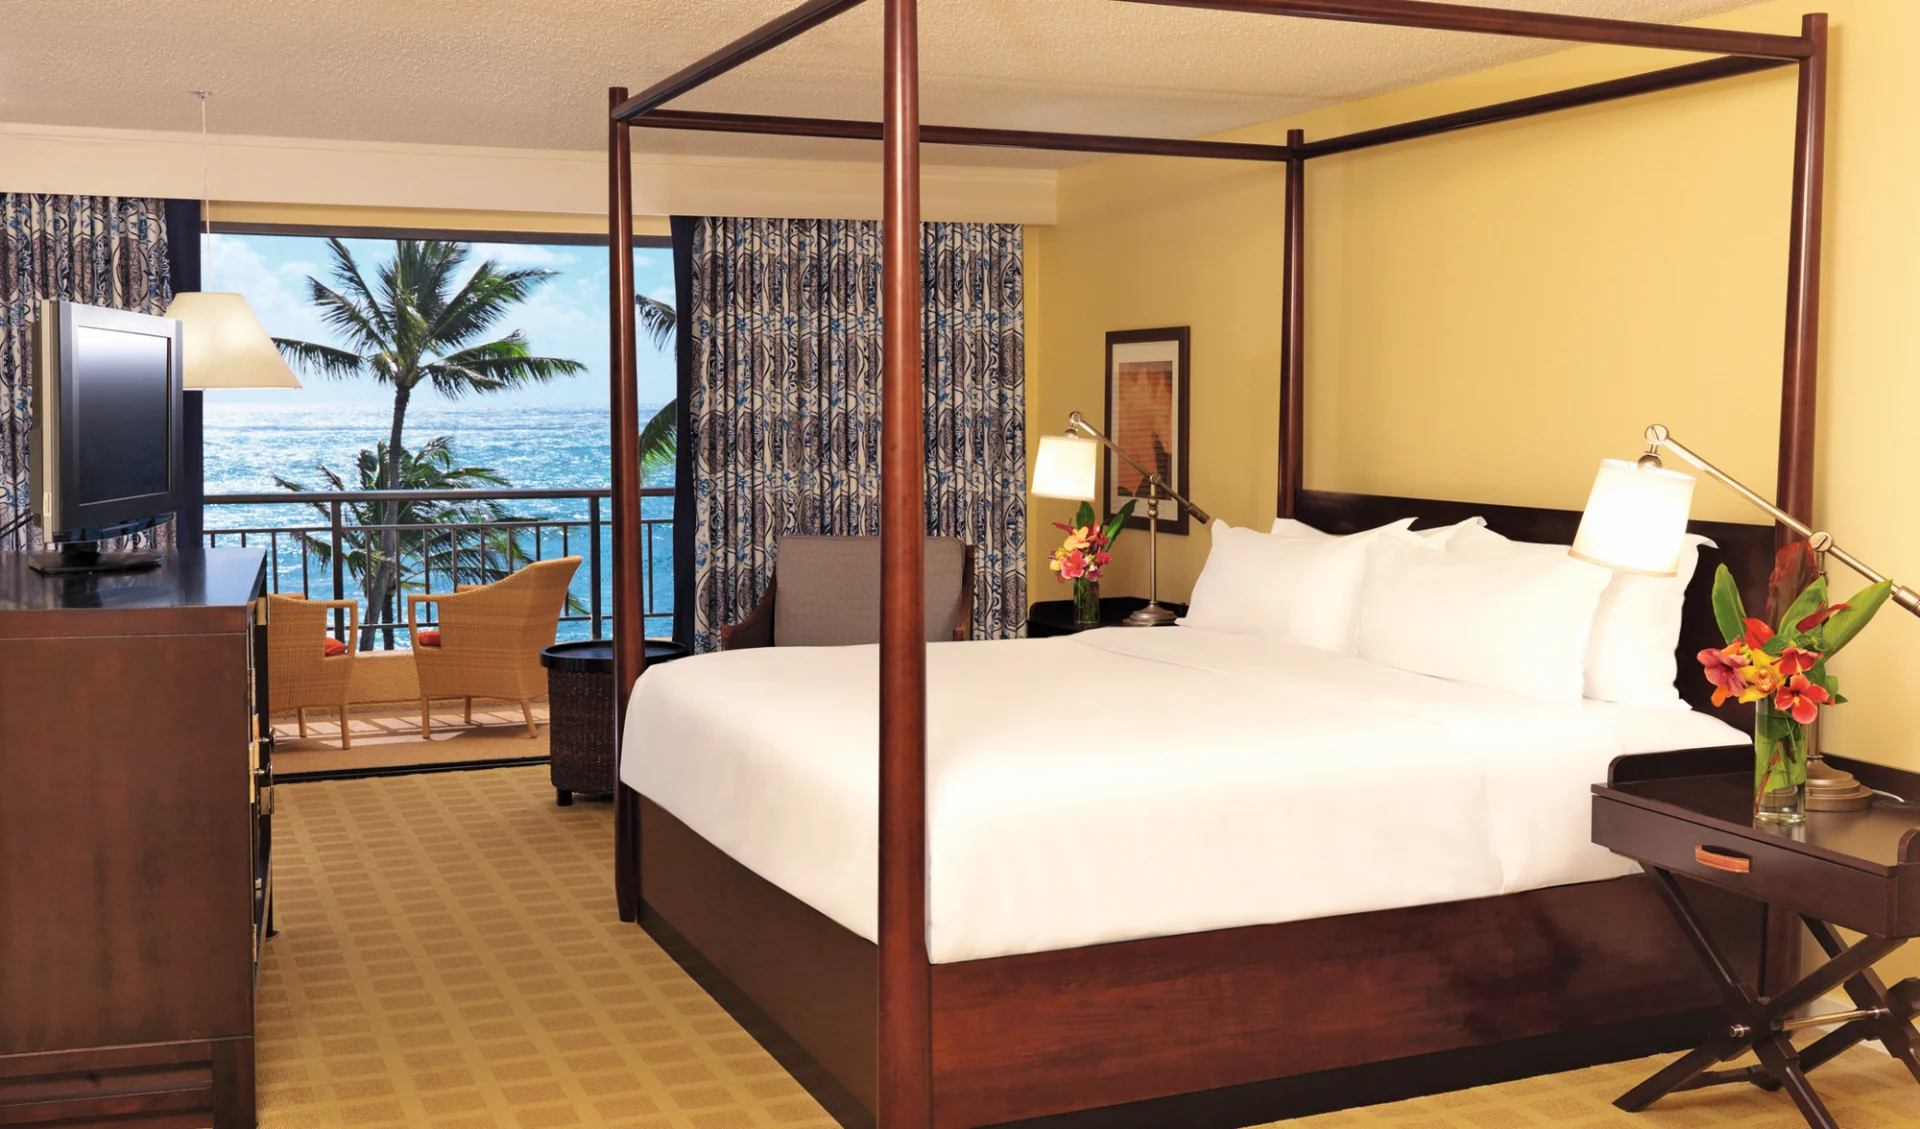 Sheraton Kauai Resort in Poipu - Kauai: zimmer sheraton kauia resort doppelzimmer meersicht